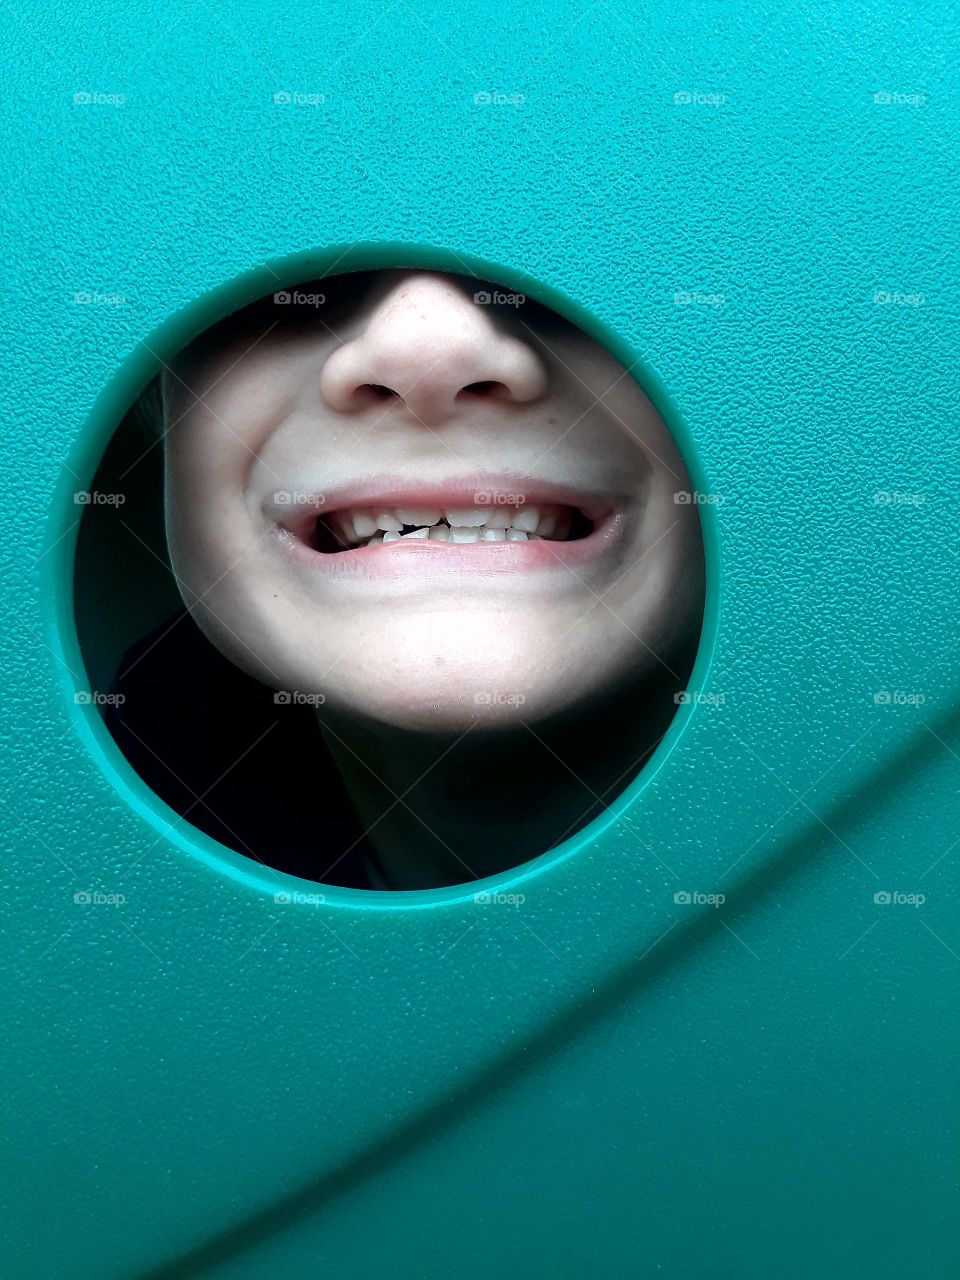 Kid smiling through playground equipment